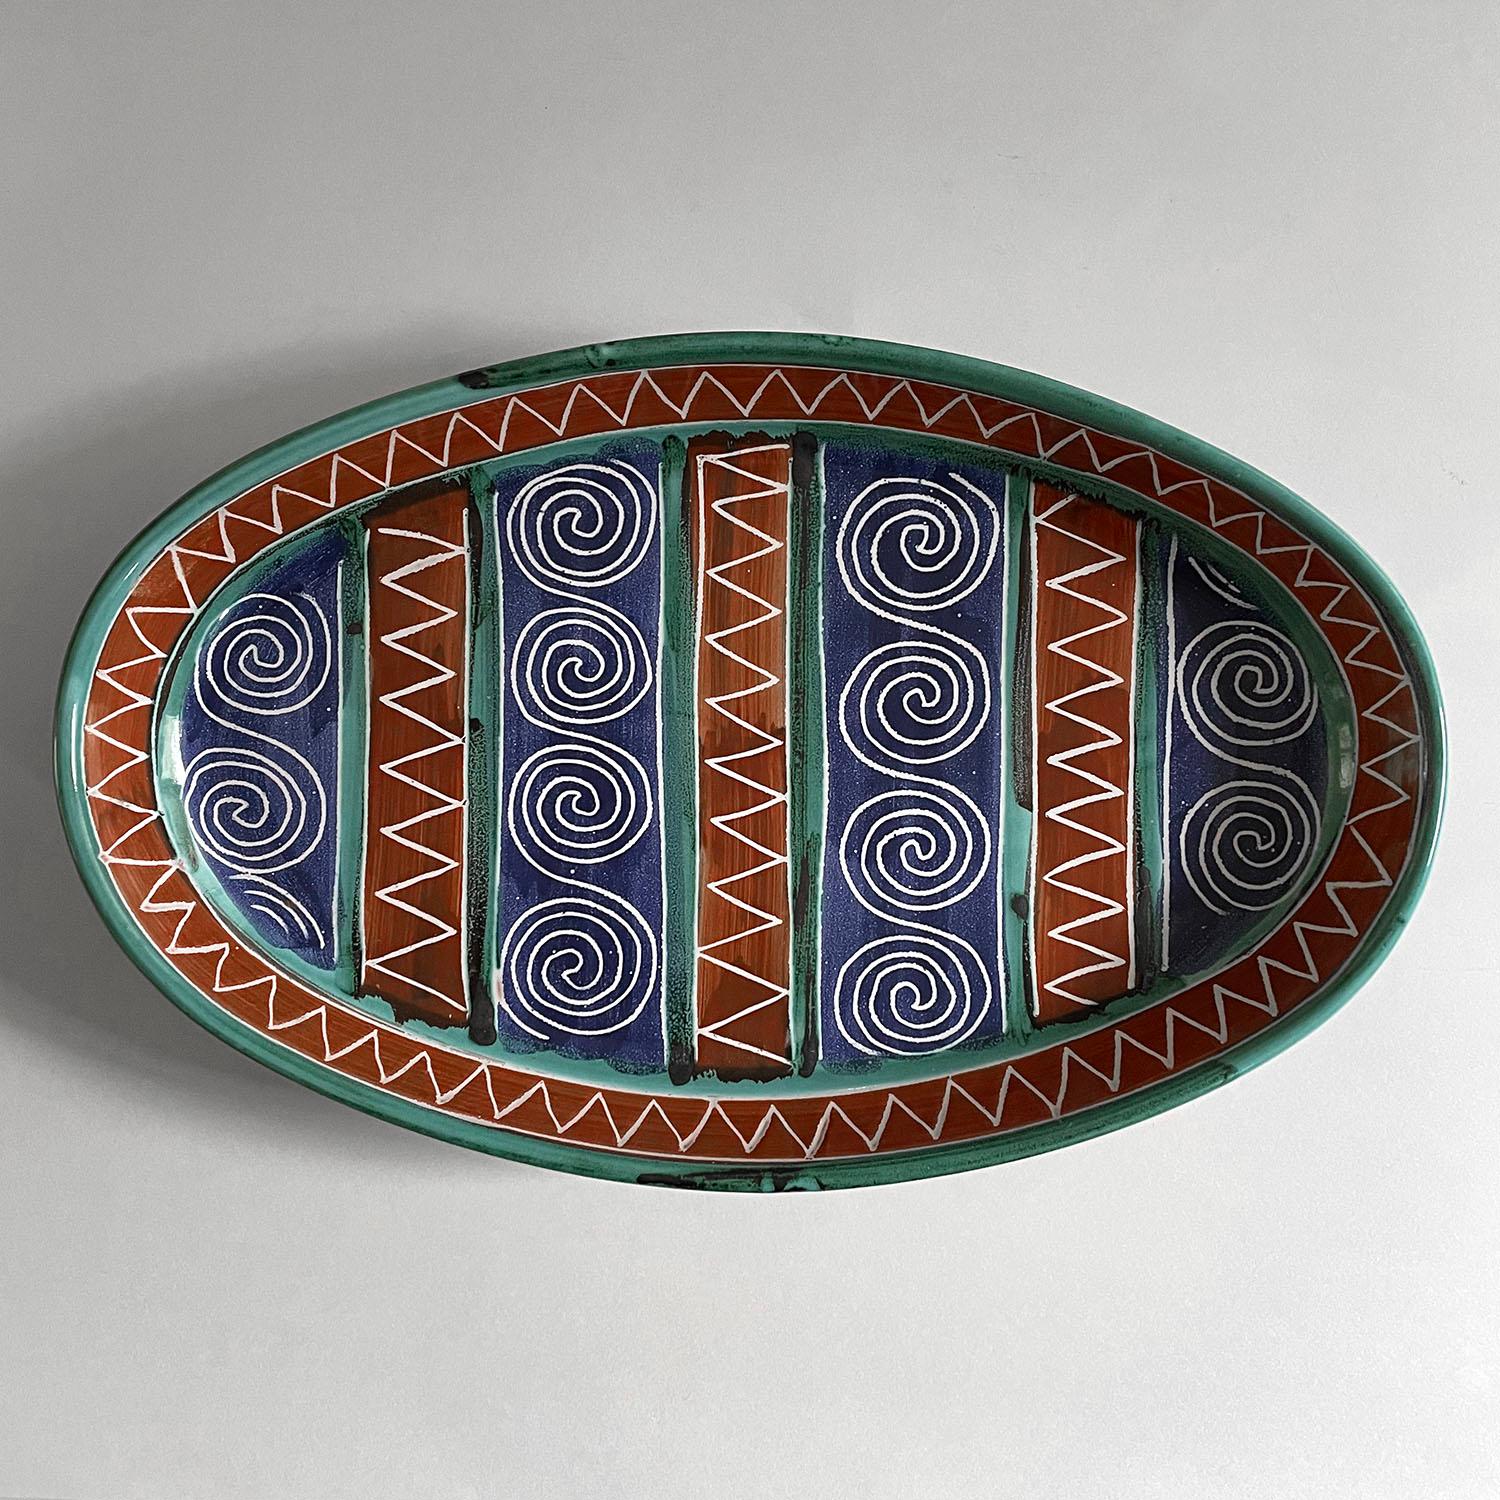 Plateau ovale en céramique Robert Picault
France, vers 1950
Egayez votre table avec la perfection d'Up&Up
Le plateau fabriqué à la main présente une magnifique palette de couleurs et des motifs ludiques.
Patine d'âge et d'utilisation
Identification